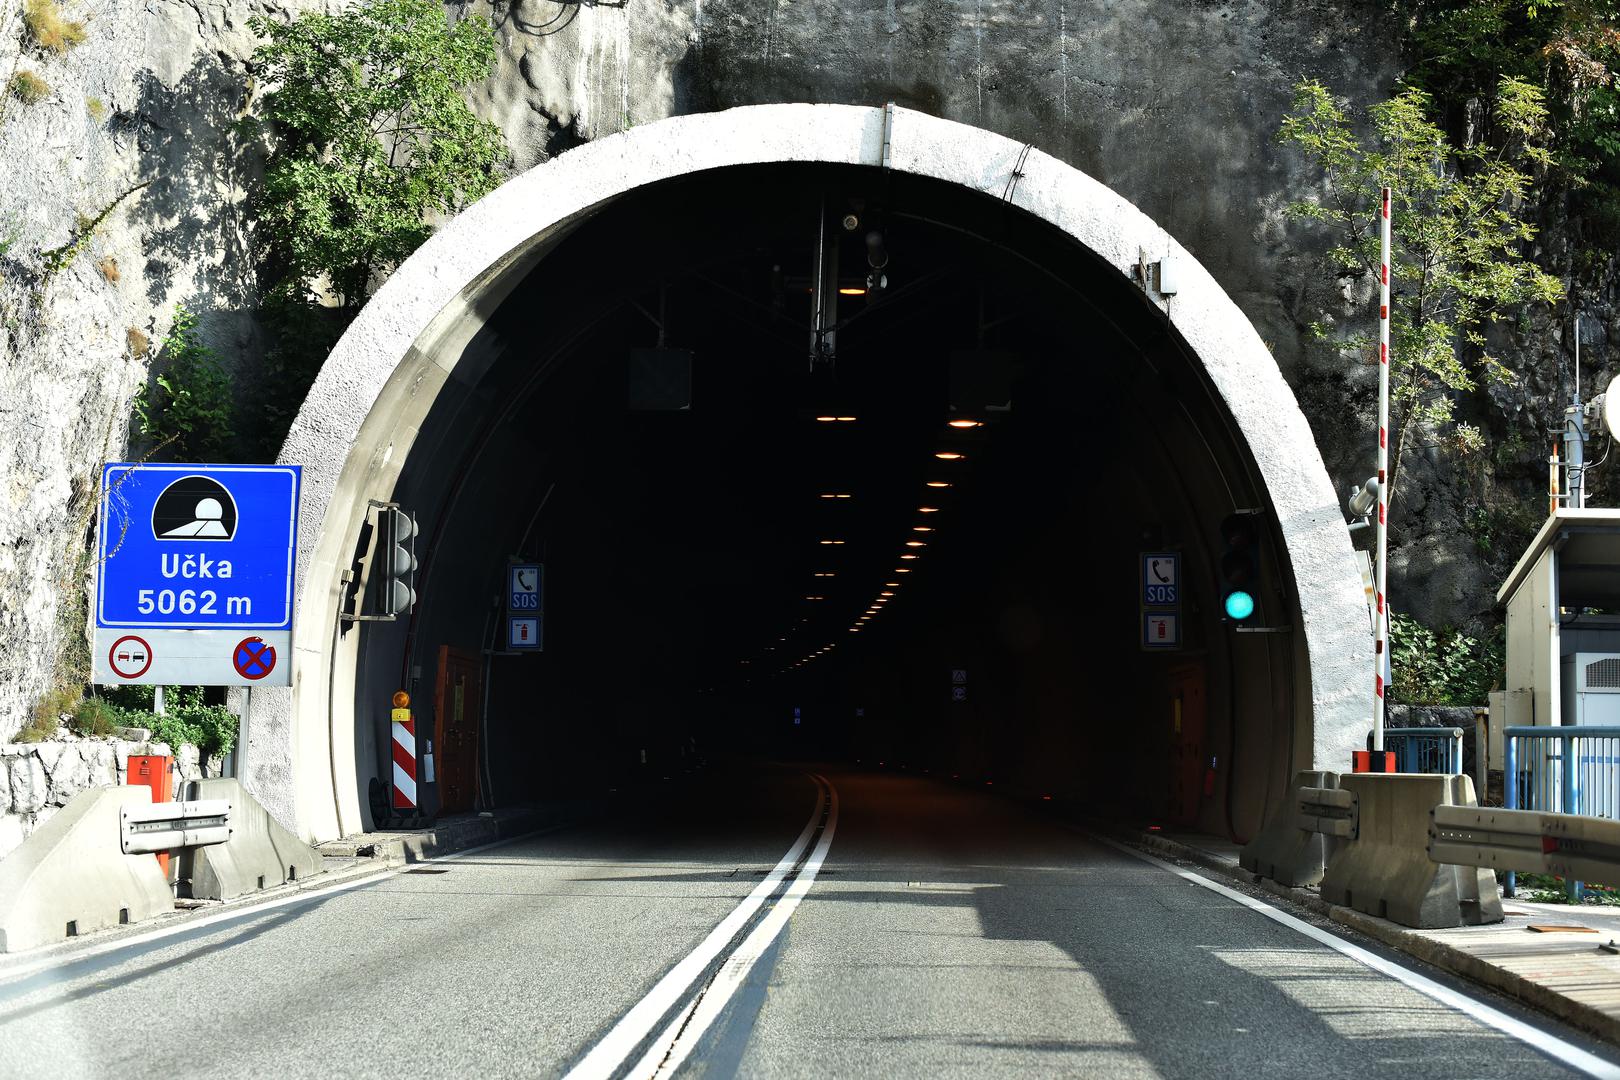 3. Tunel Učka, 5.062 metara: Tunel Učka, dio hrvatske autoceste A8, prolazi kroz planinski masiv Učke. Bio je to donedavno najduži cestovni tunel u Hrvatskoj. Tunel je opremljen raznim sigurnosnim uređajima, a u tijeku je izgradnja druge cijevi. Za prolazak kroz ovaj tunel, koji služi i kao naplatna postaja za Istarski ipsilon, naplaćuje se cestarina.